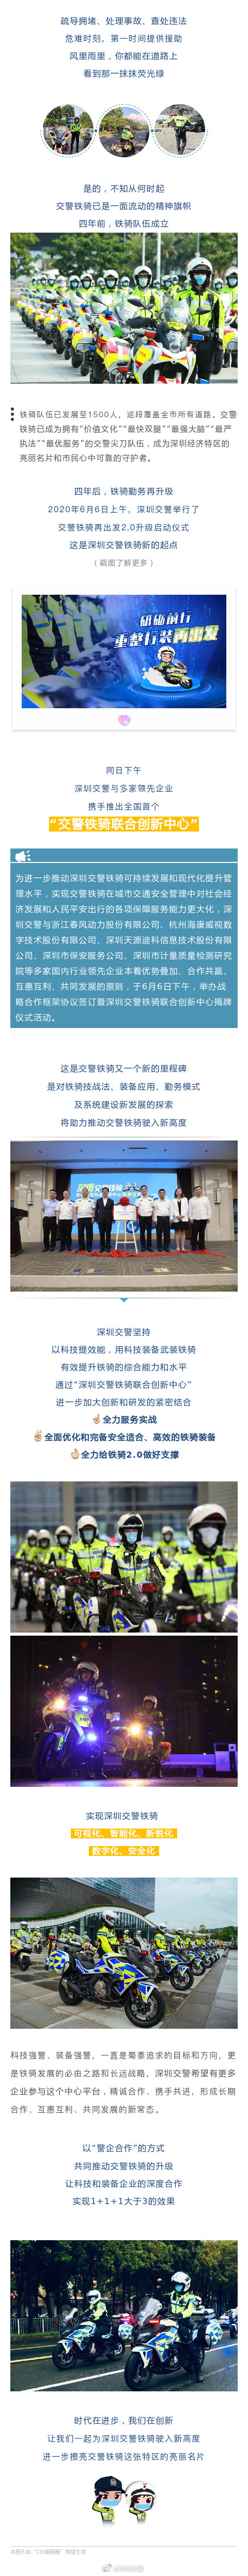 深圳警企合作!全国首个交警铁骑联合创新中心